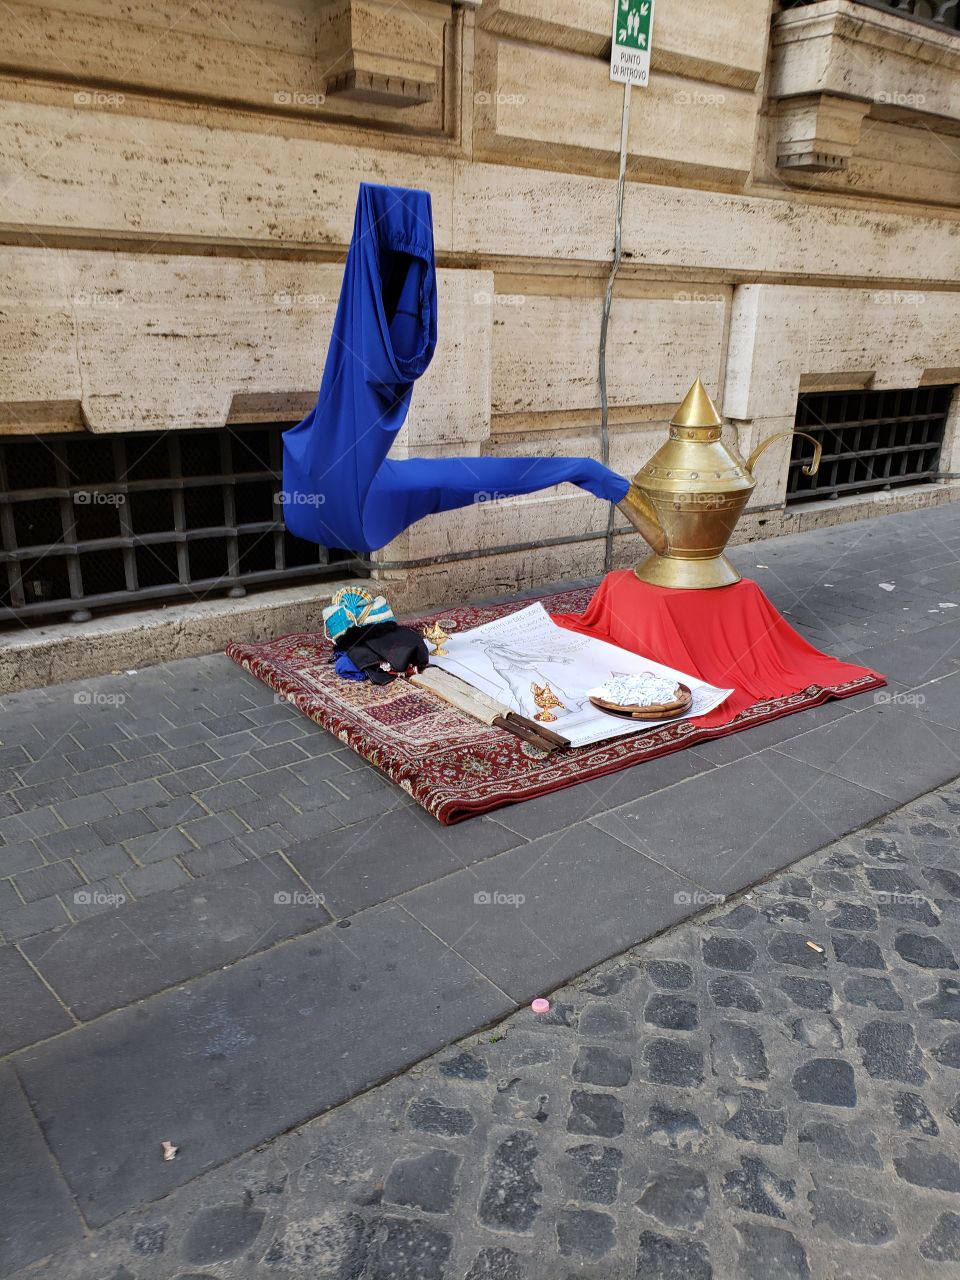 Dare to rub the lamp in Rome?